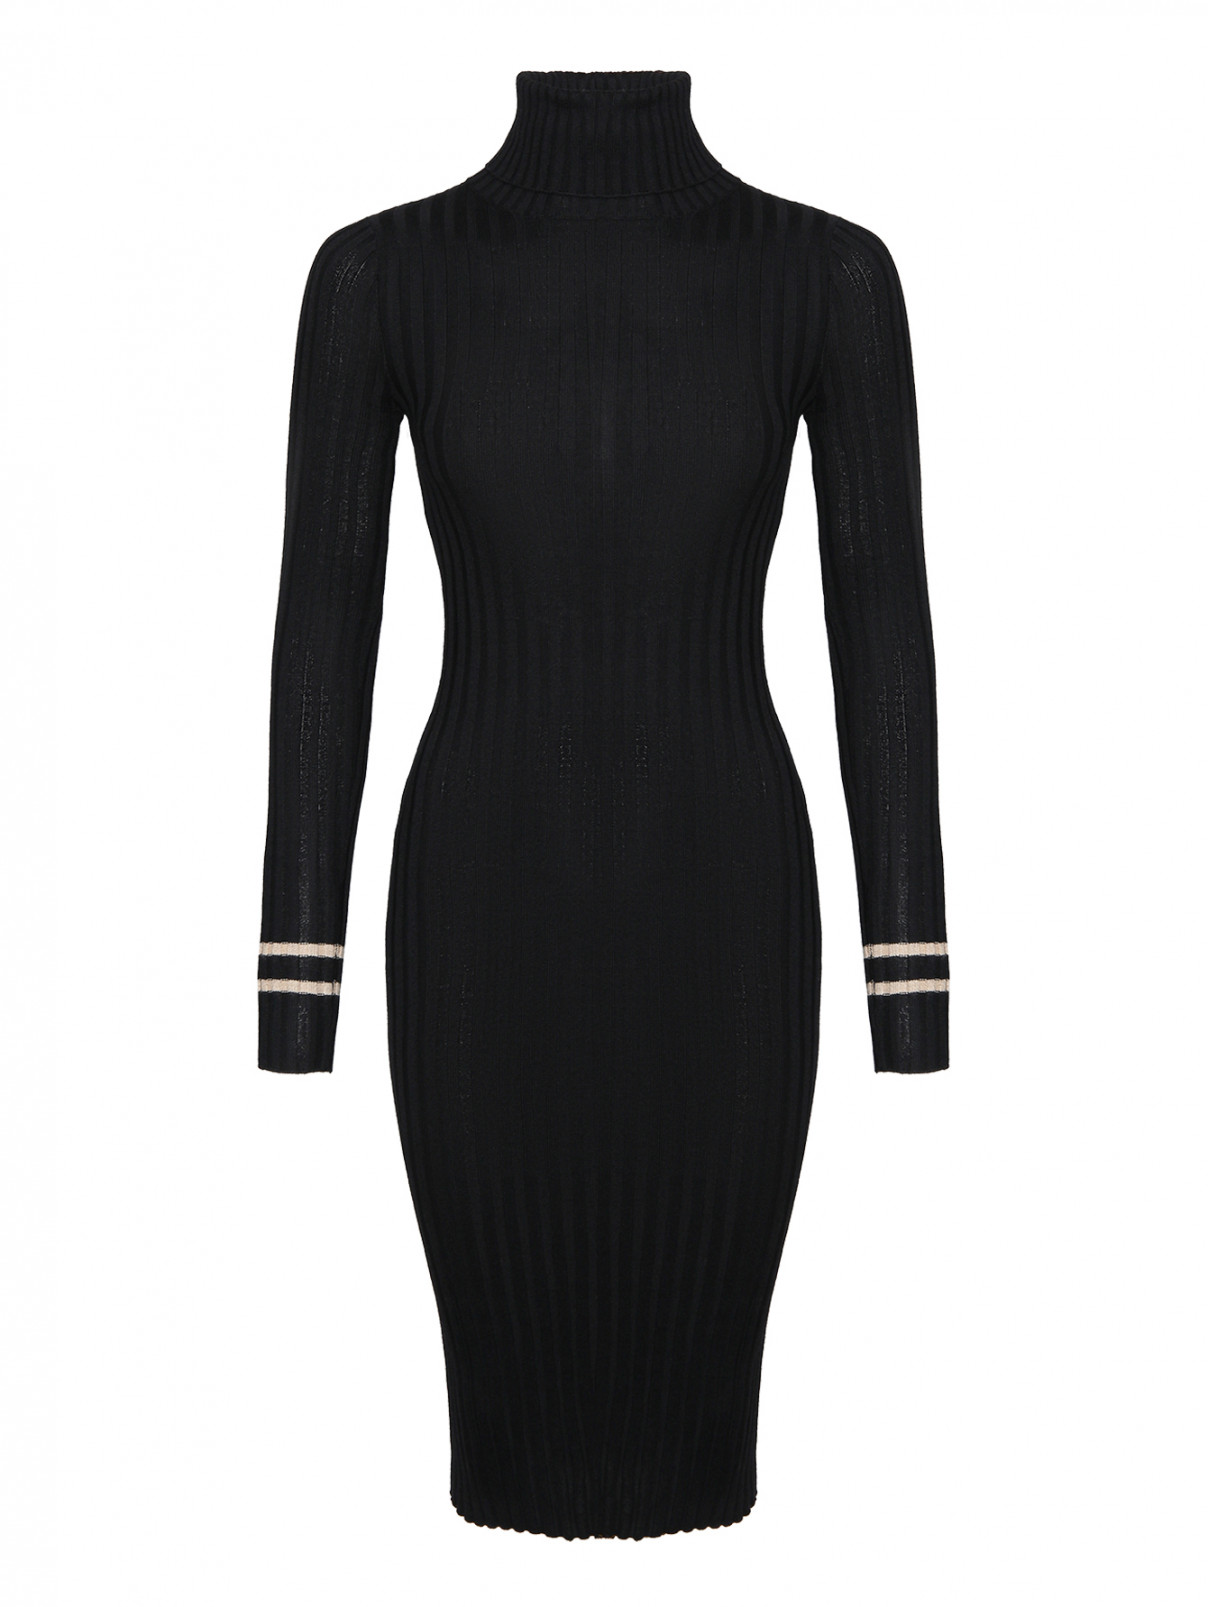 Трикотажное платье из шерсти и шелка Lorena Antoniazzi  –  Общий вид  – Цвет:  Черный